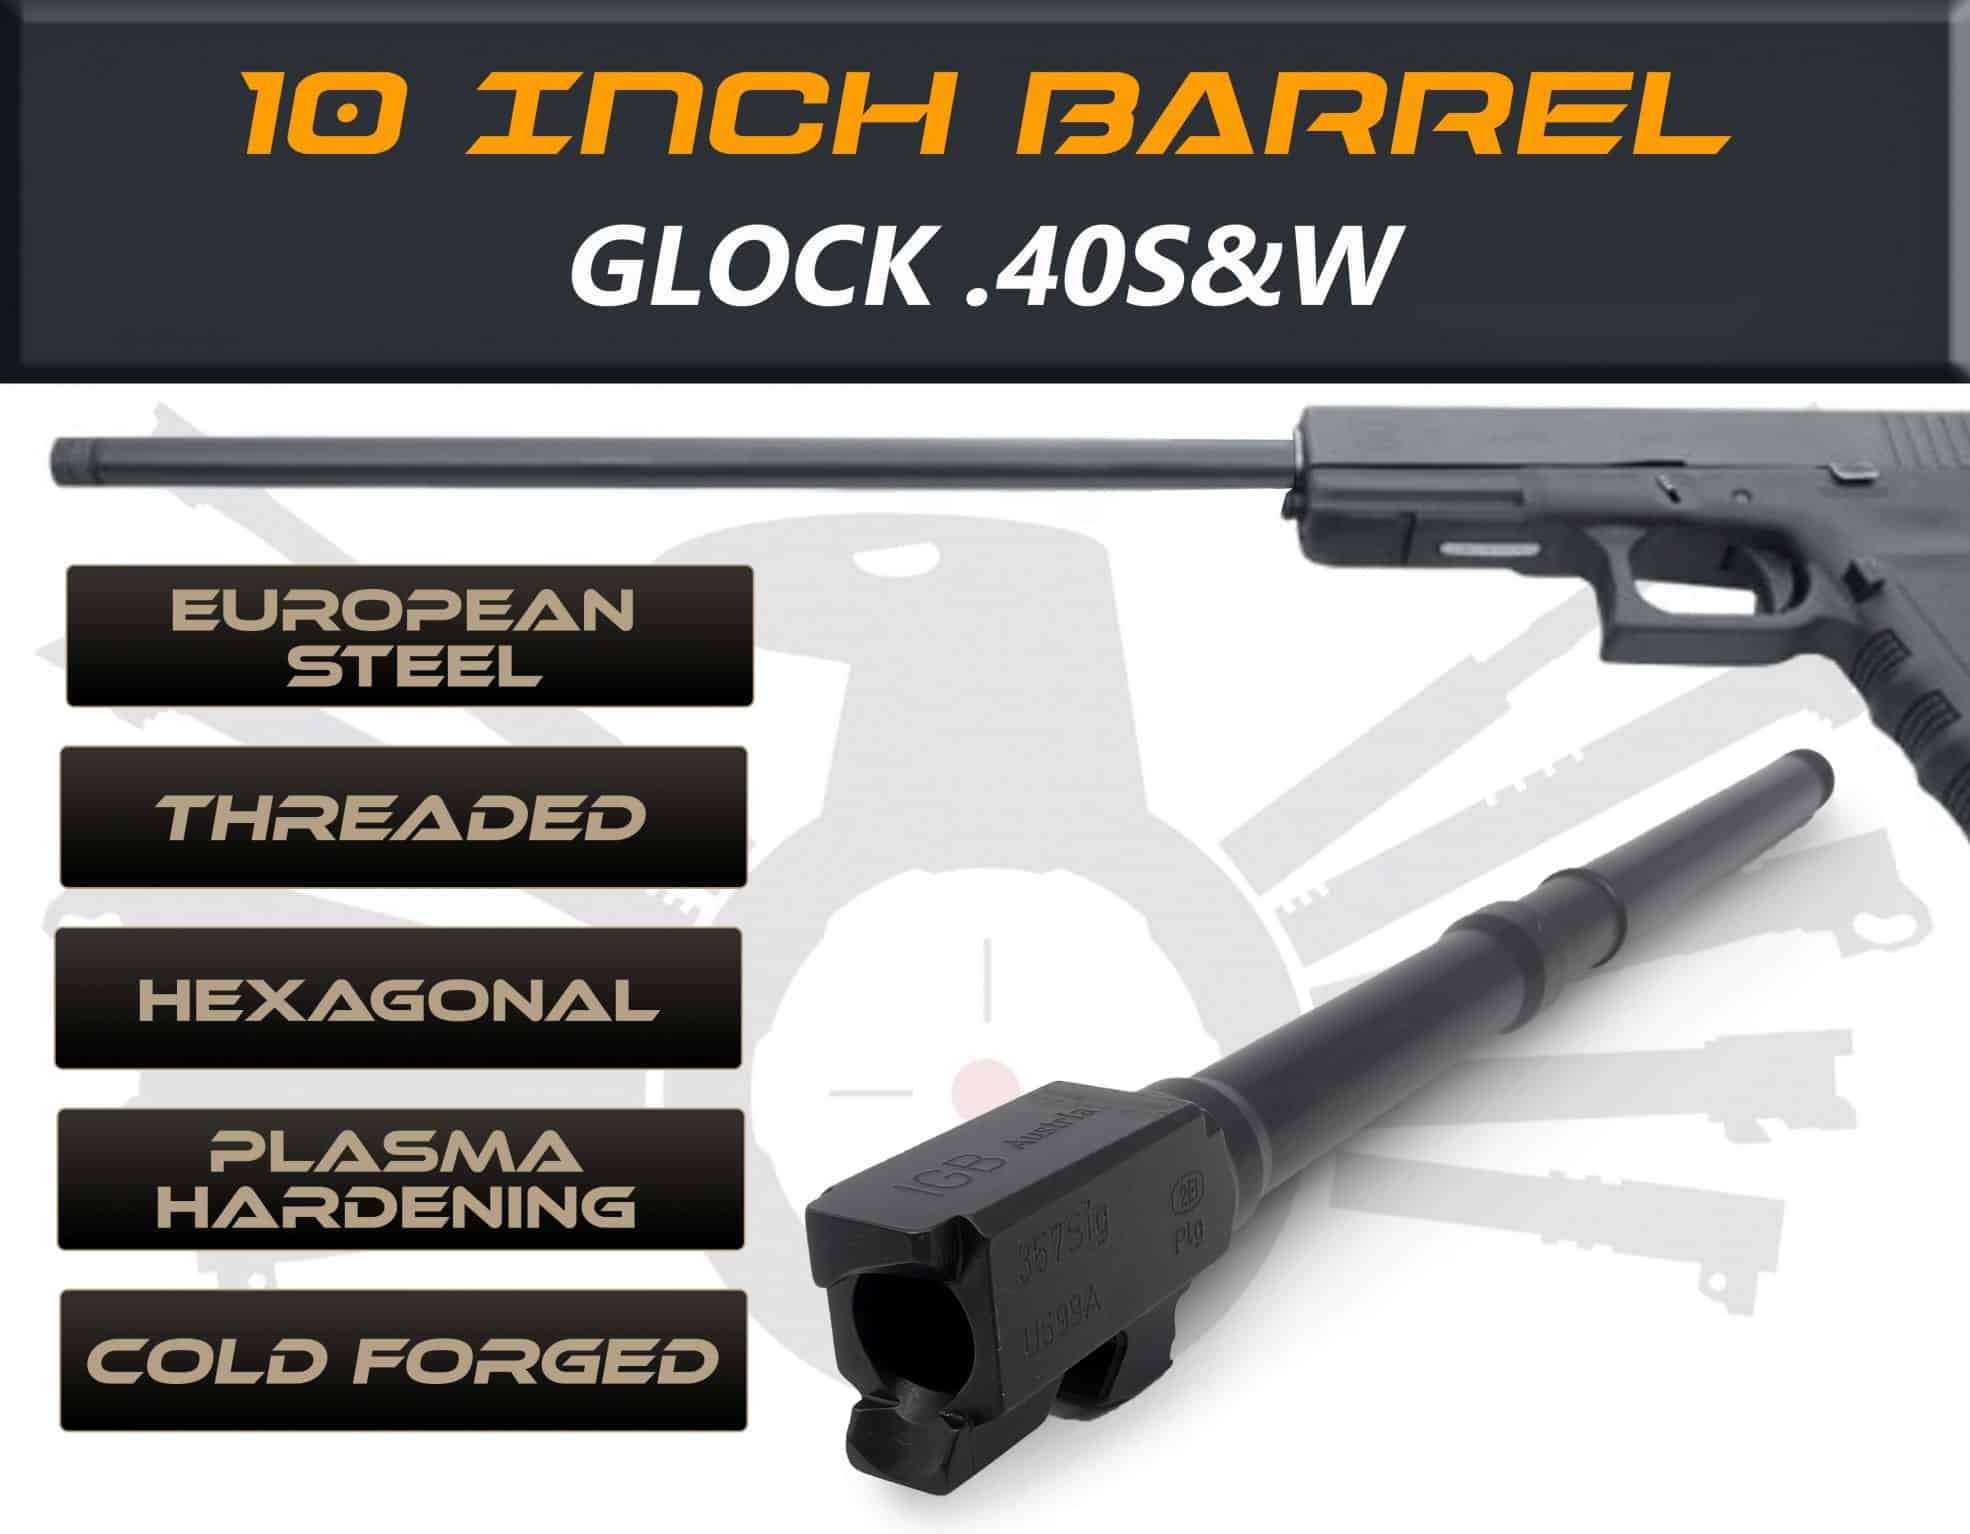 Glock Gen 5 Barrels 10